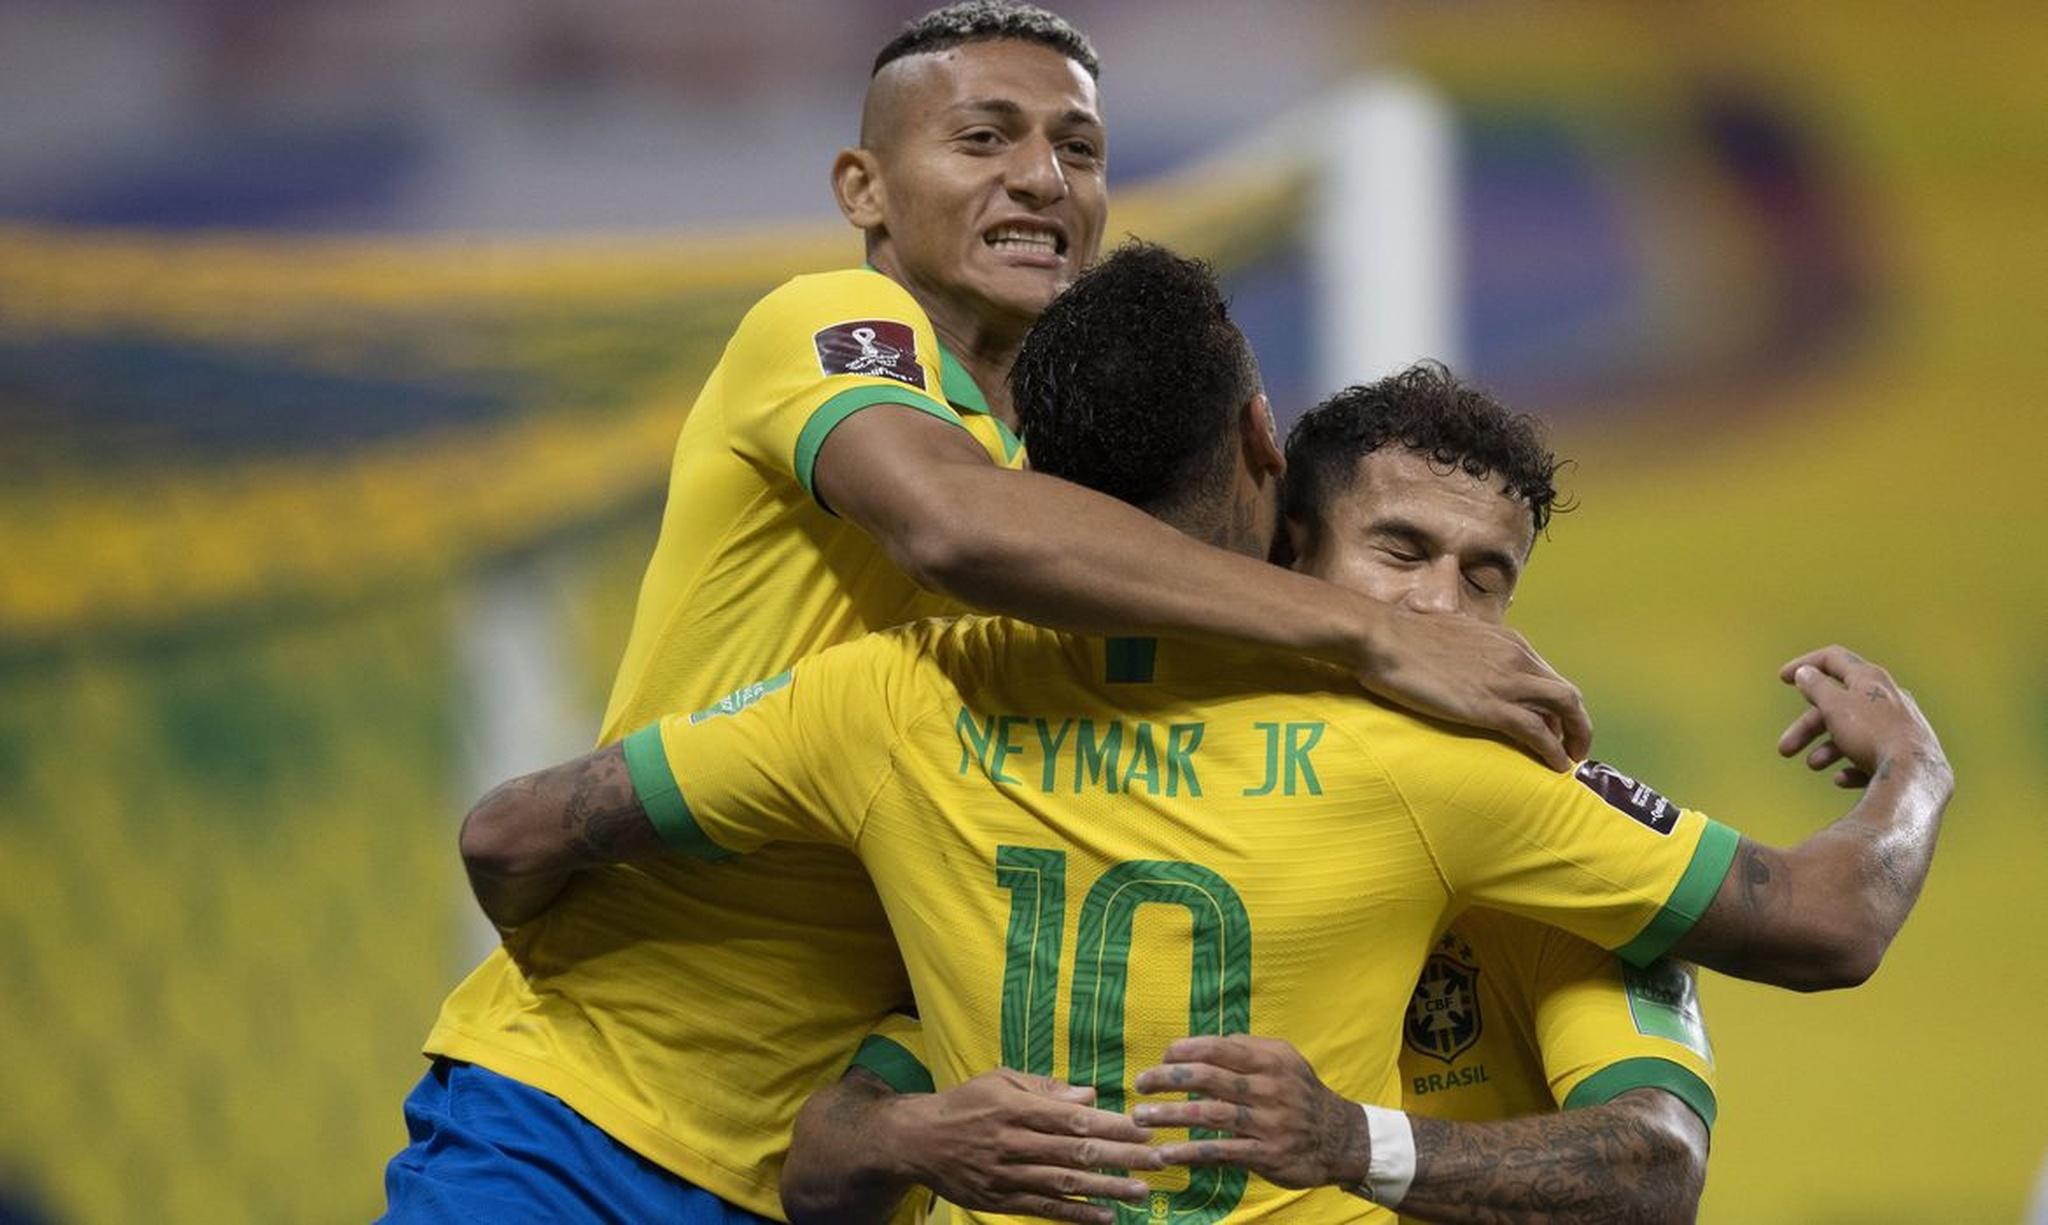 Conmebol detalha jogos do Brasil nas eliminatórias para a Copa do